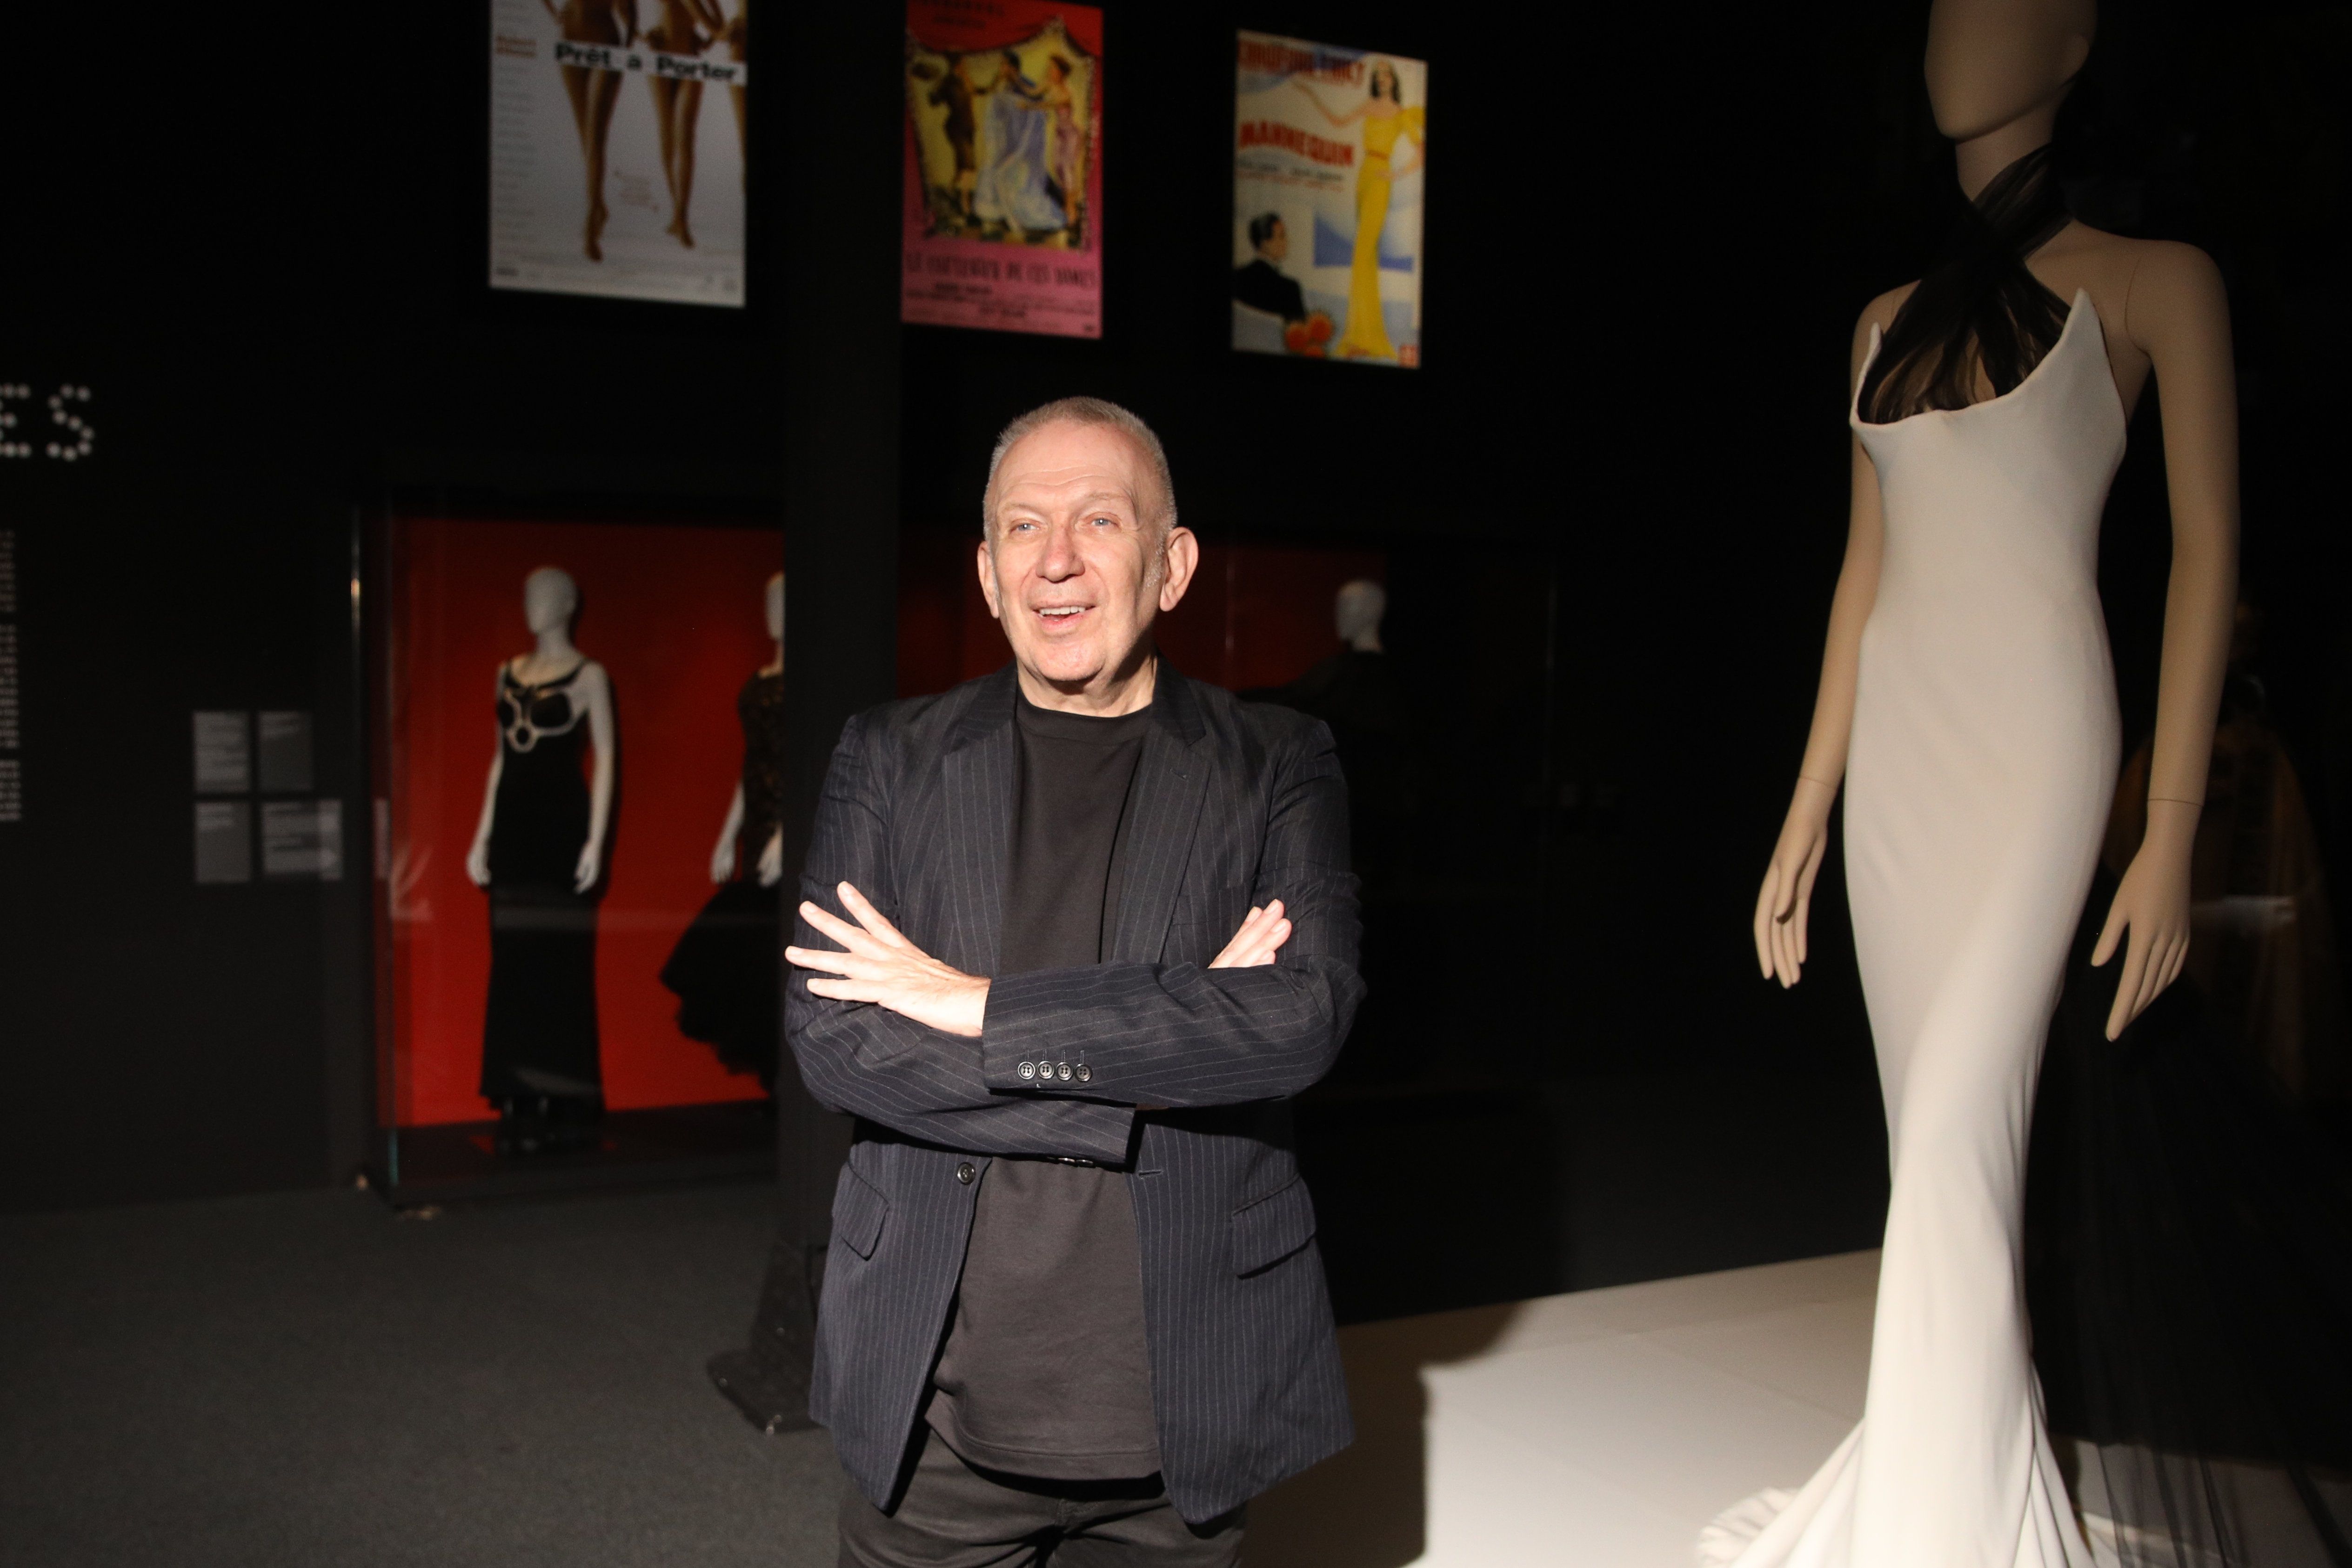 Jean Paul Gaultier muestra en Barcelona la evolución de la mujer empoderada en cine y moda